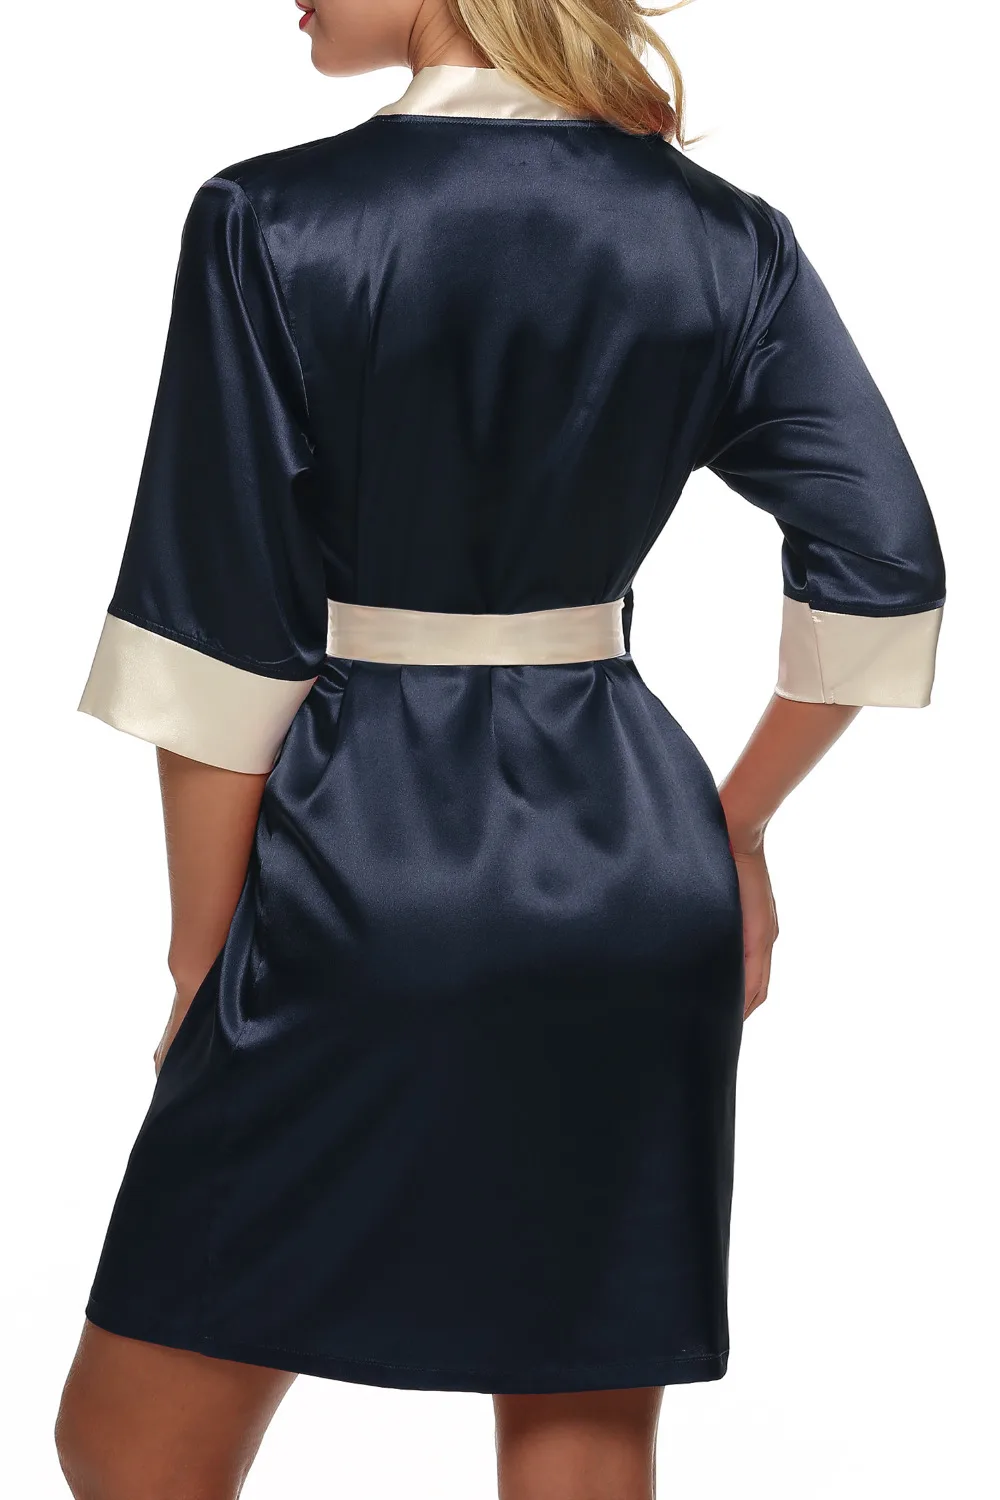 Ekouaer для женщин кимоно халат по колено сексуальное женское белье пижамы Короткие атласные кружево ночное невесты Халаты XS-XL